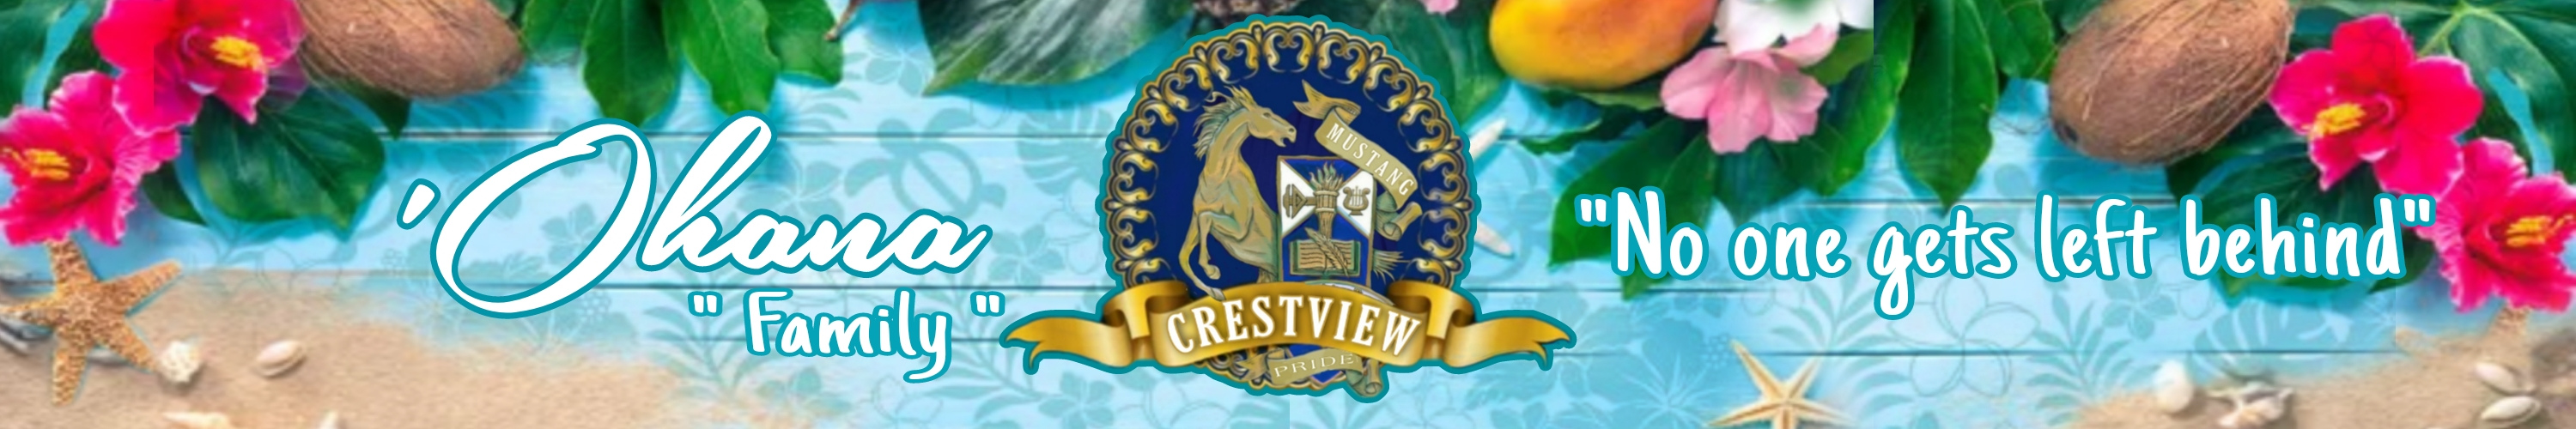 crestview banner